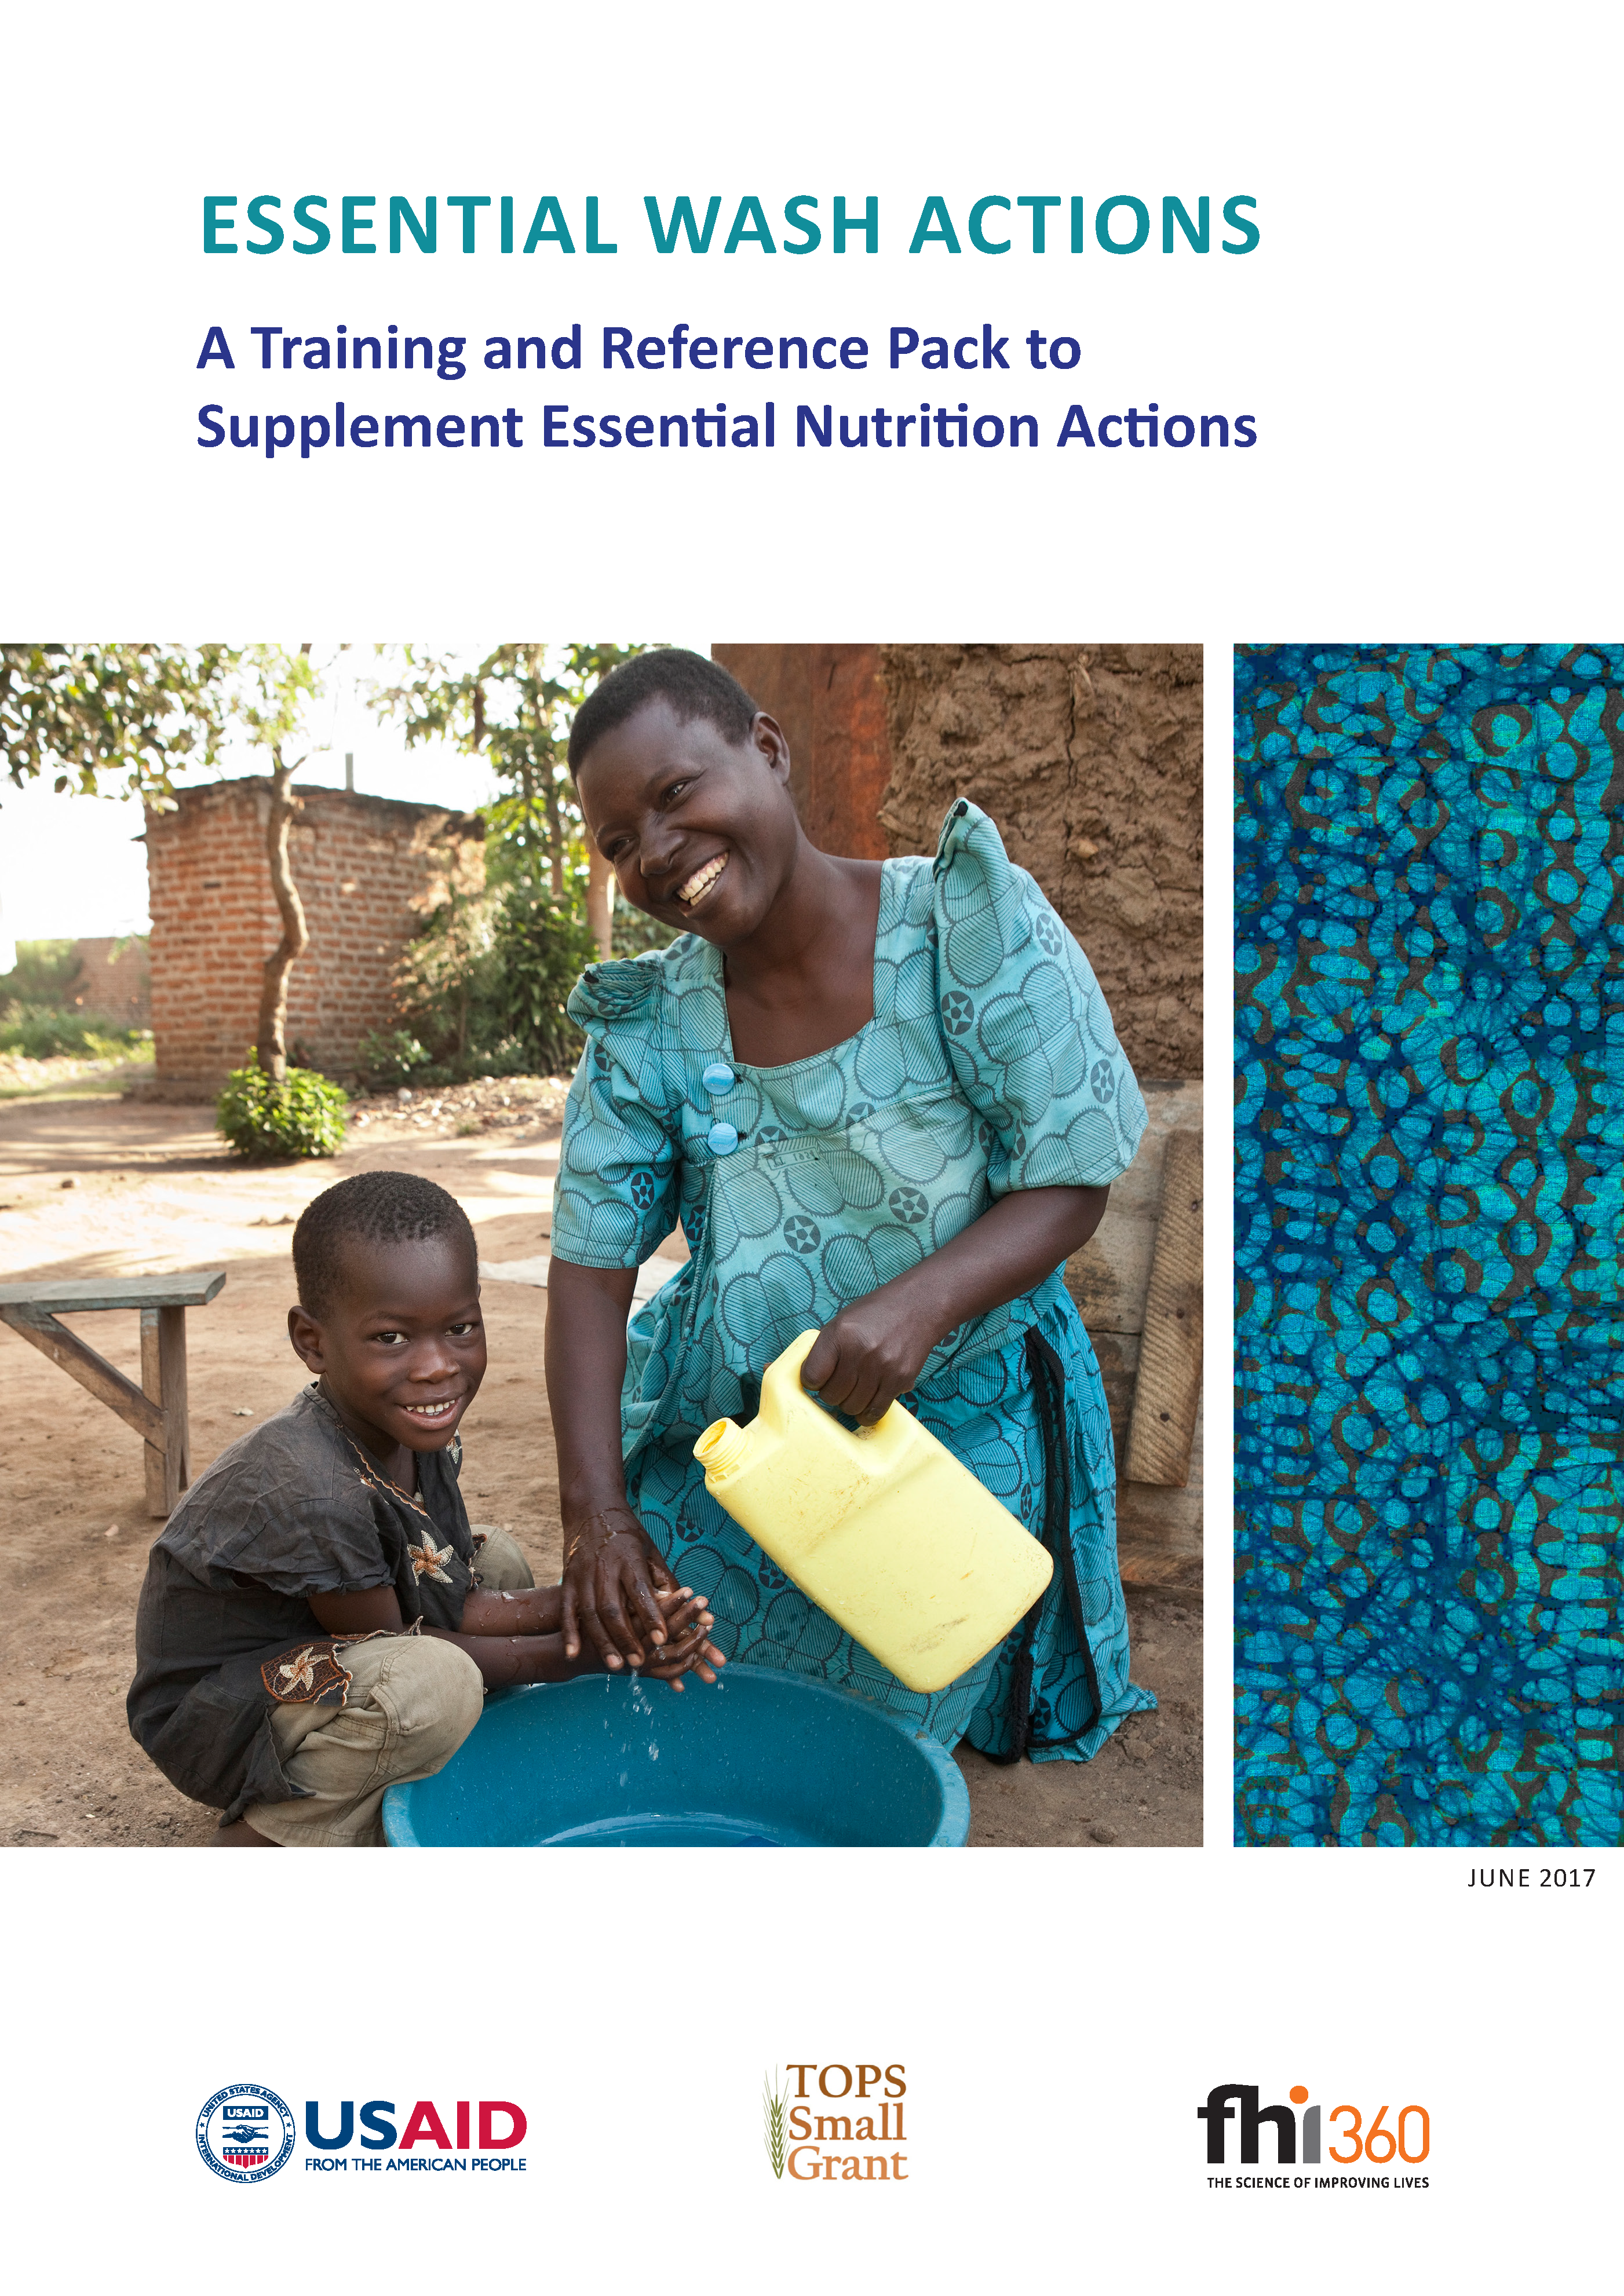 Page de couverture des ACTIONS DE WASH ESSENTIELLES : Un pack de formation et de référence pour compléter les actions nutritionnelles essentielles